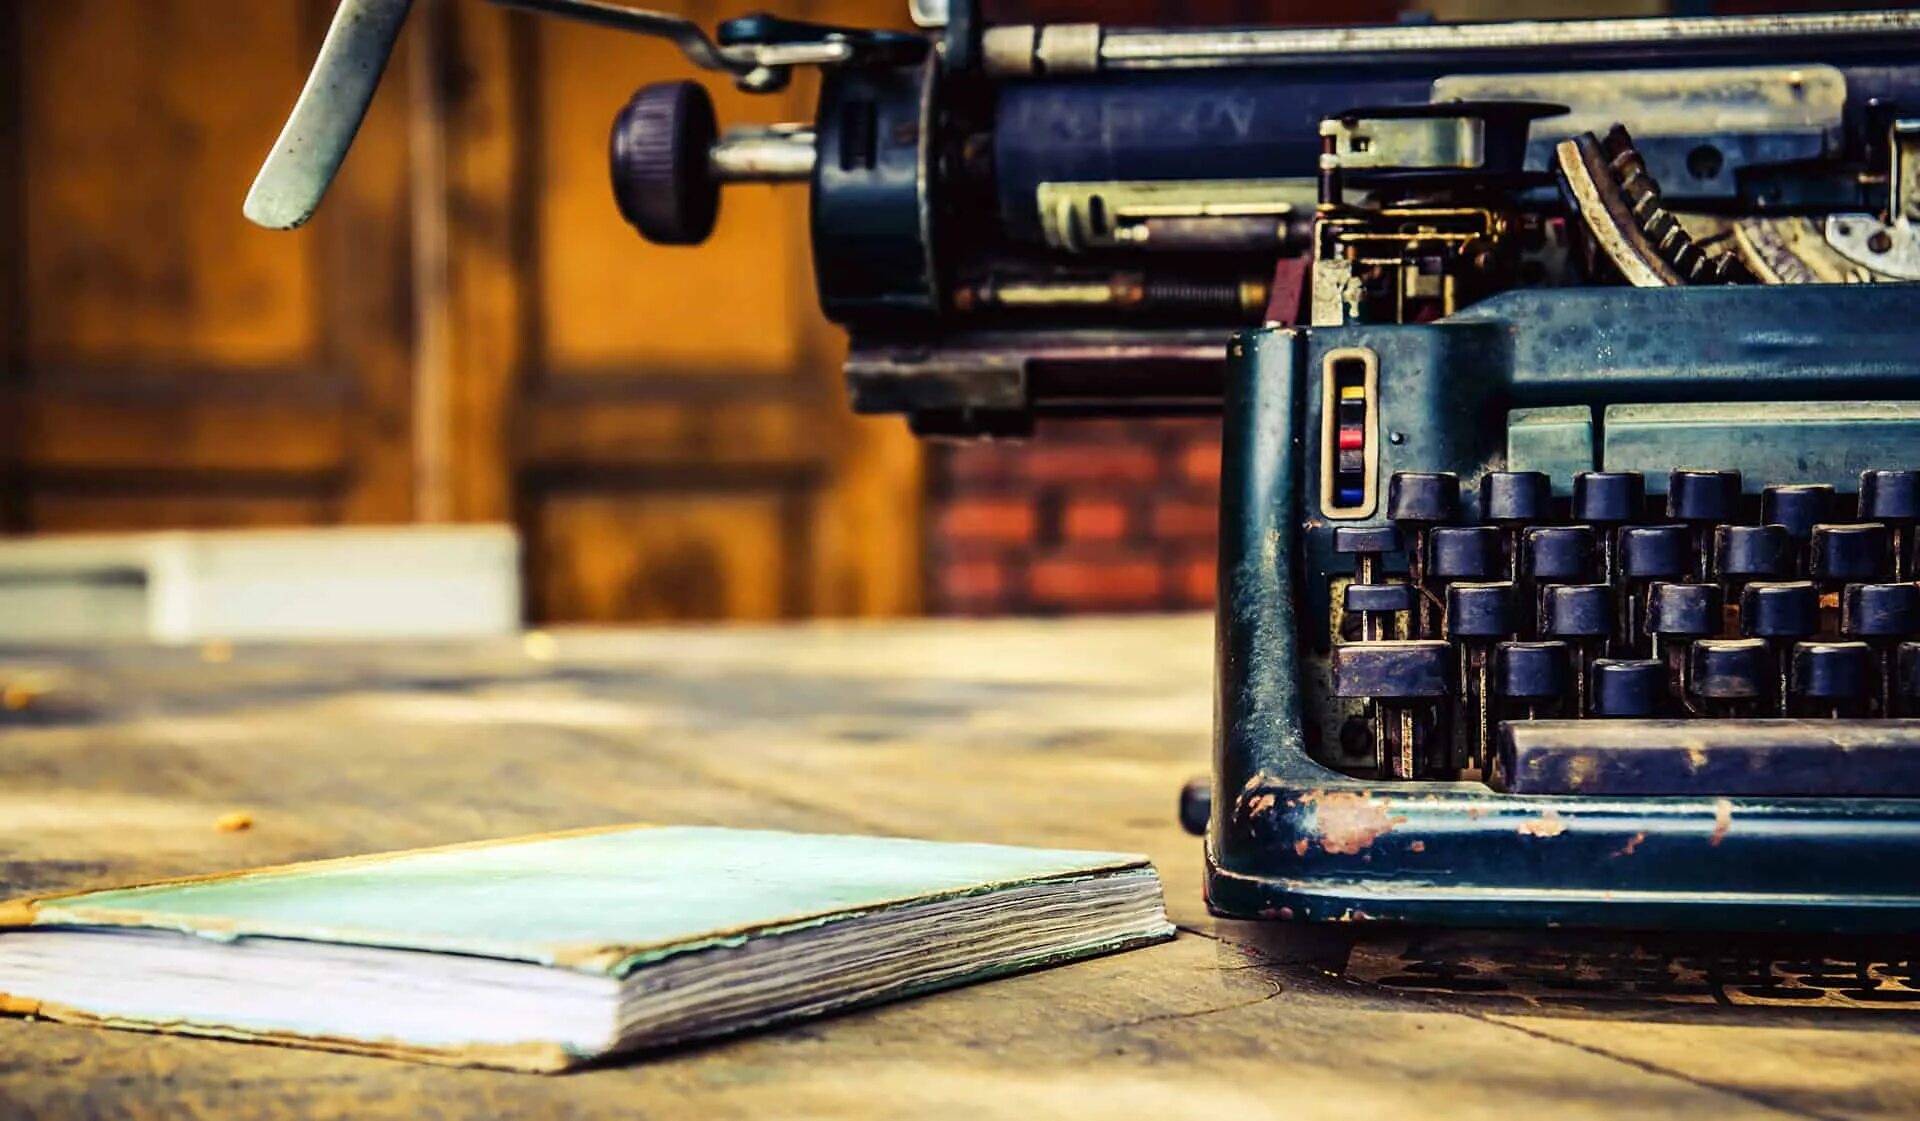 Печатная машинка на столе. Печатная машинка писатель. Писатели и машинки. Фотосессия с печатной машинкой.